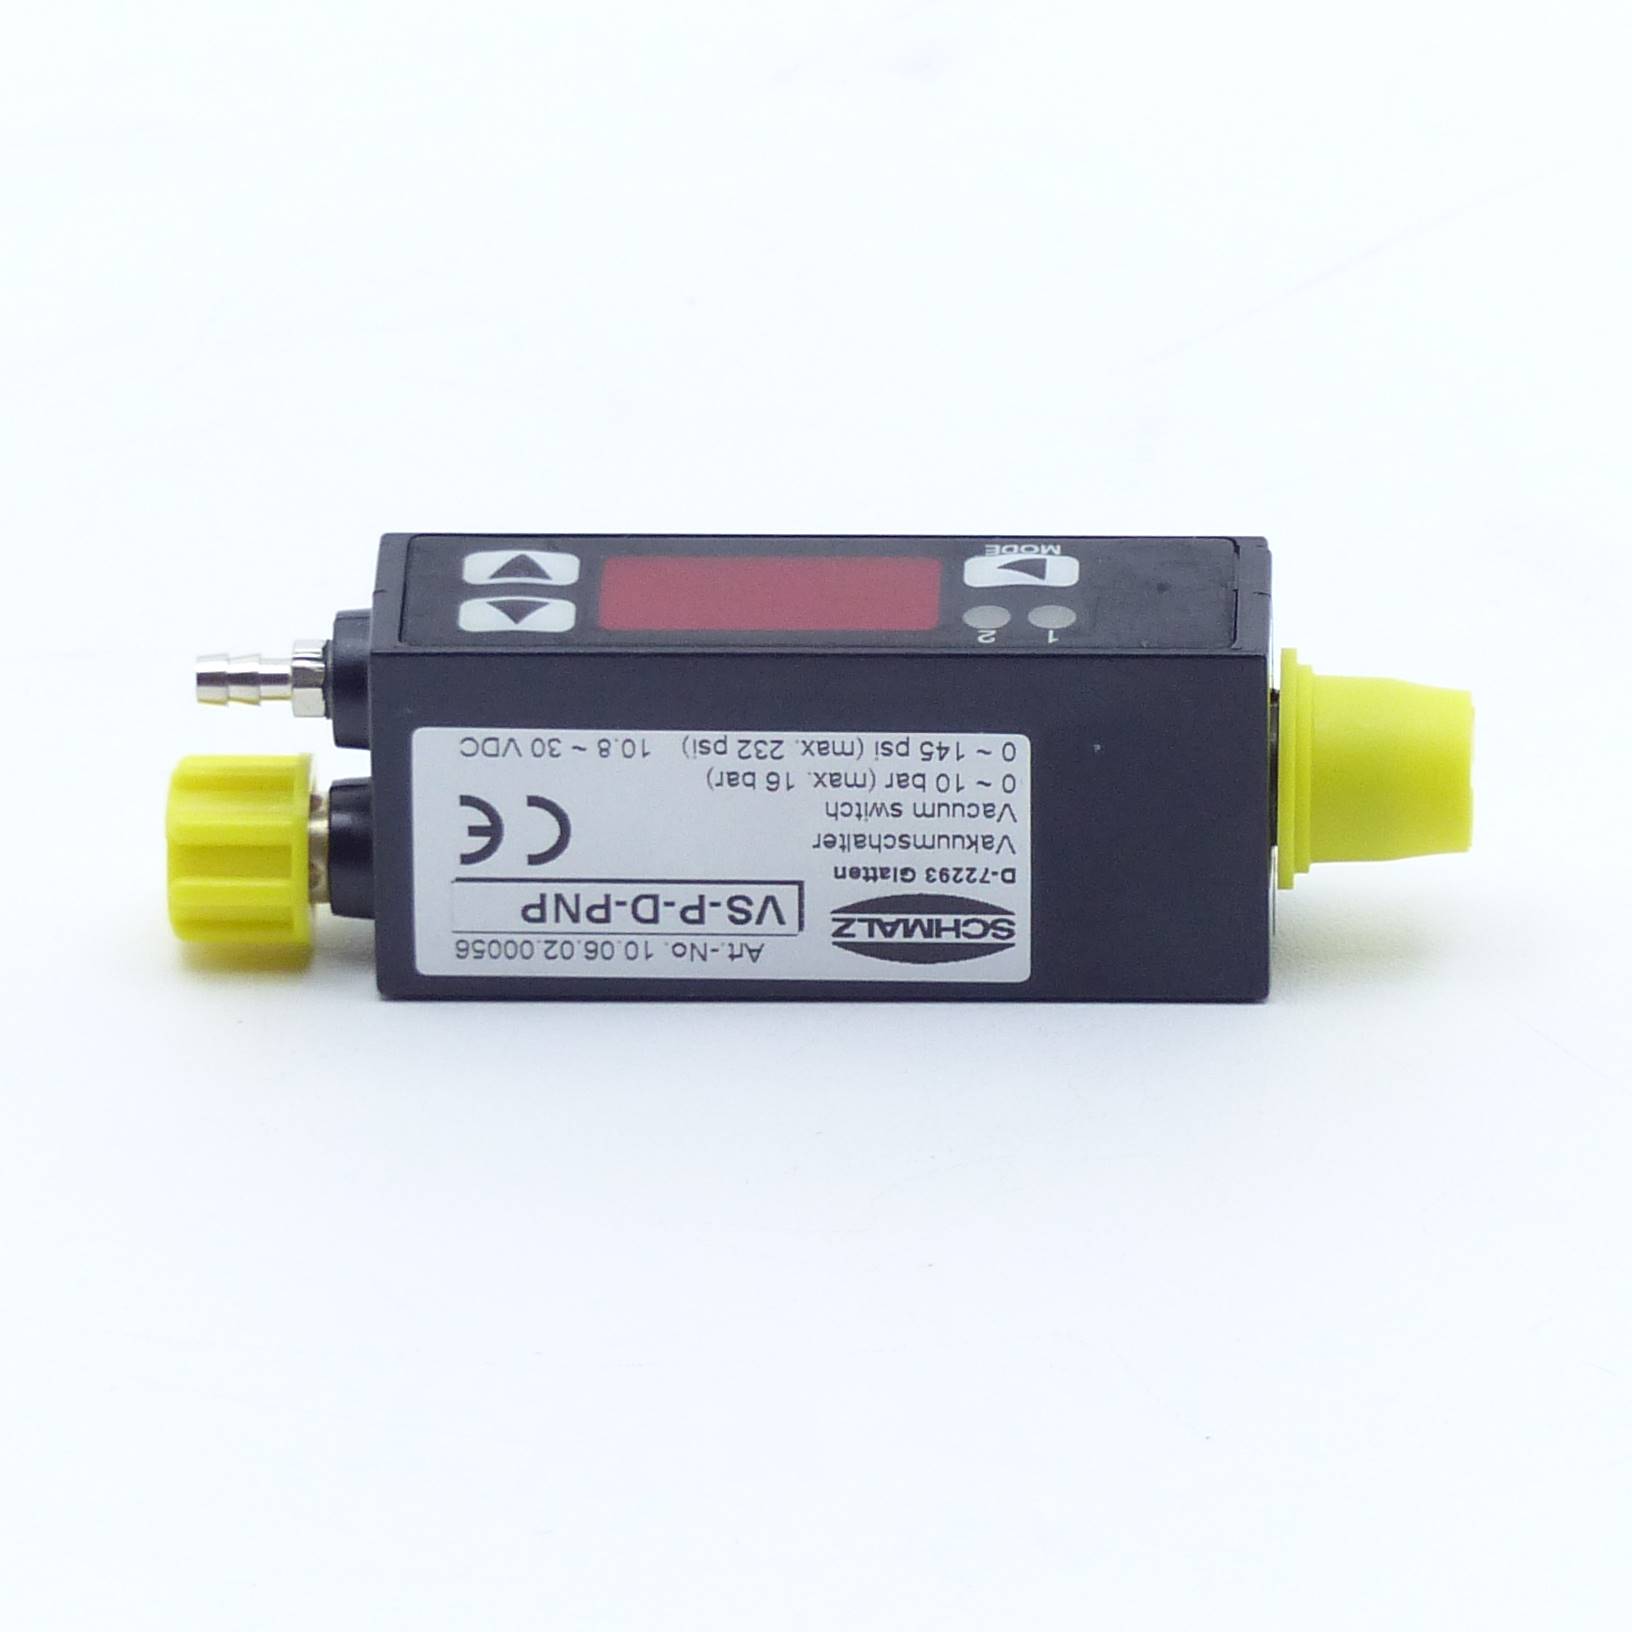 Vacuum Switch VS-P-D-PNP 